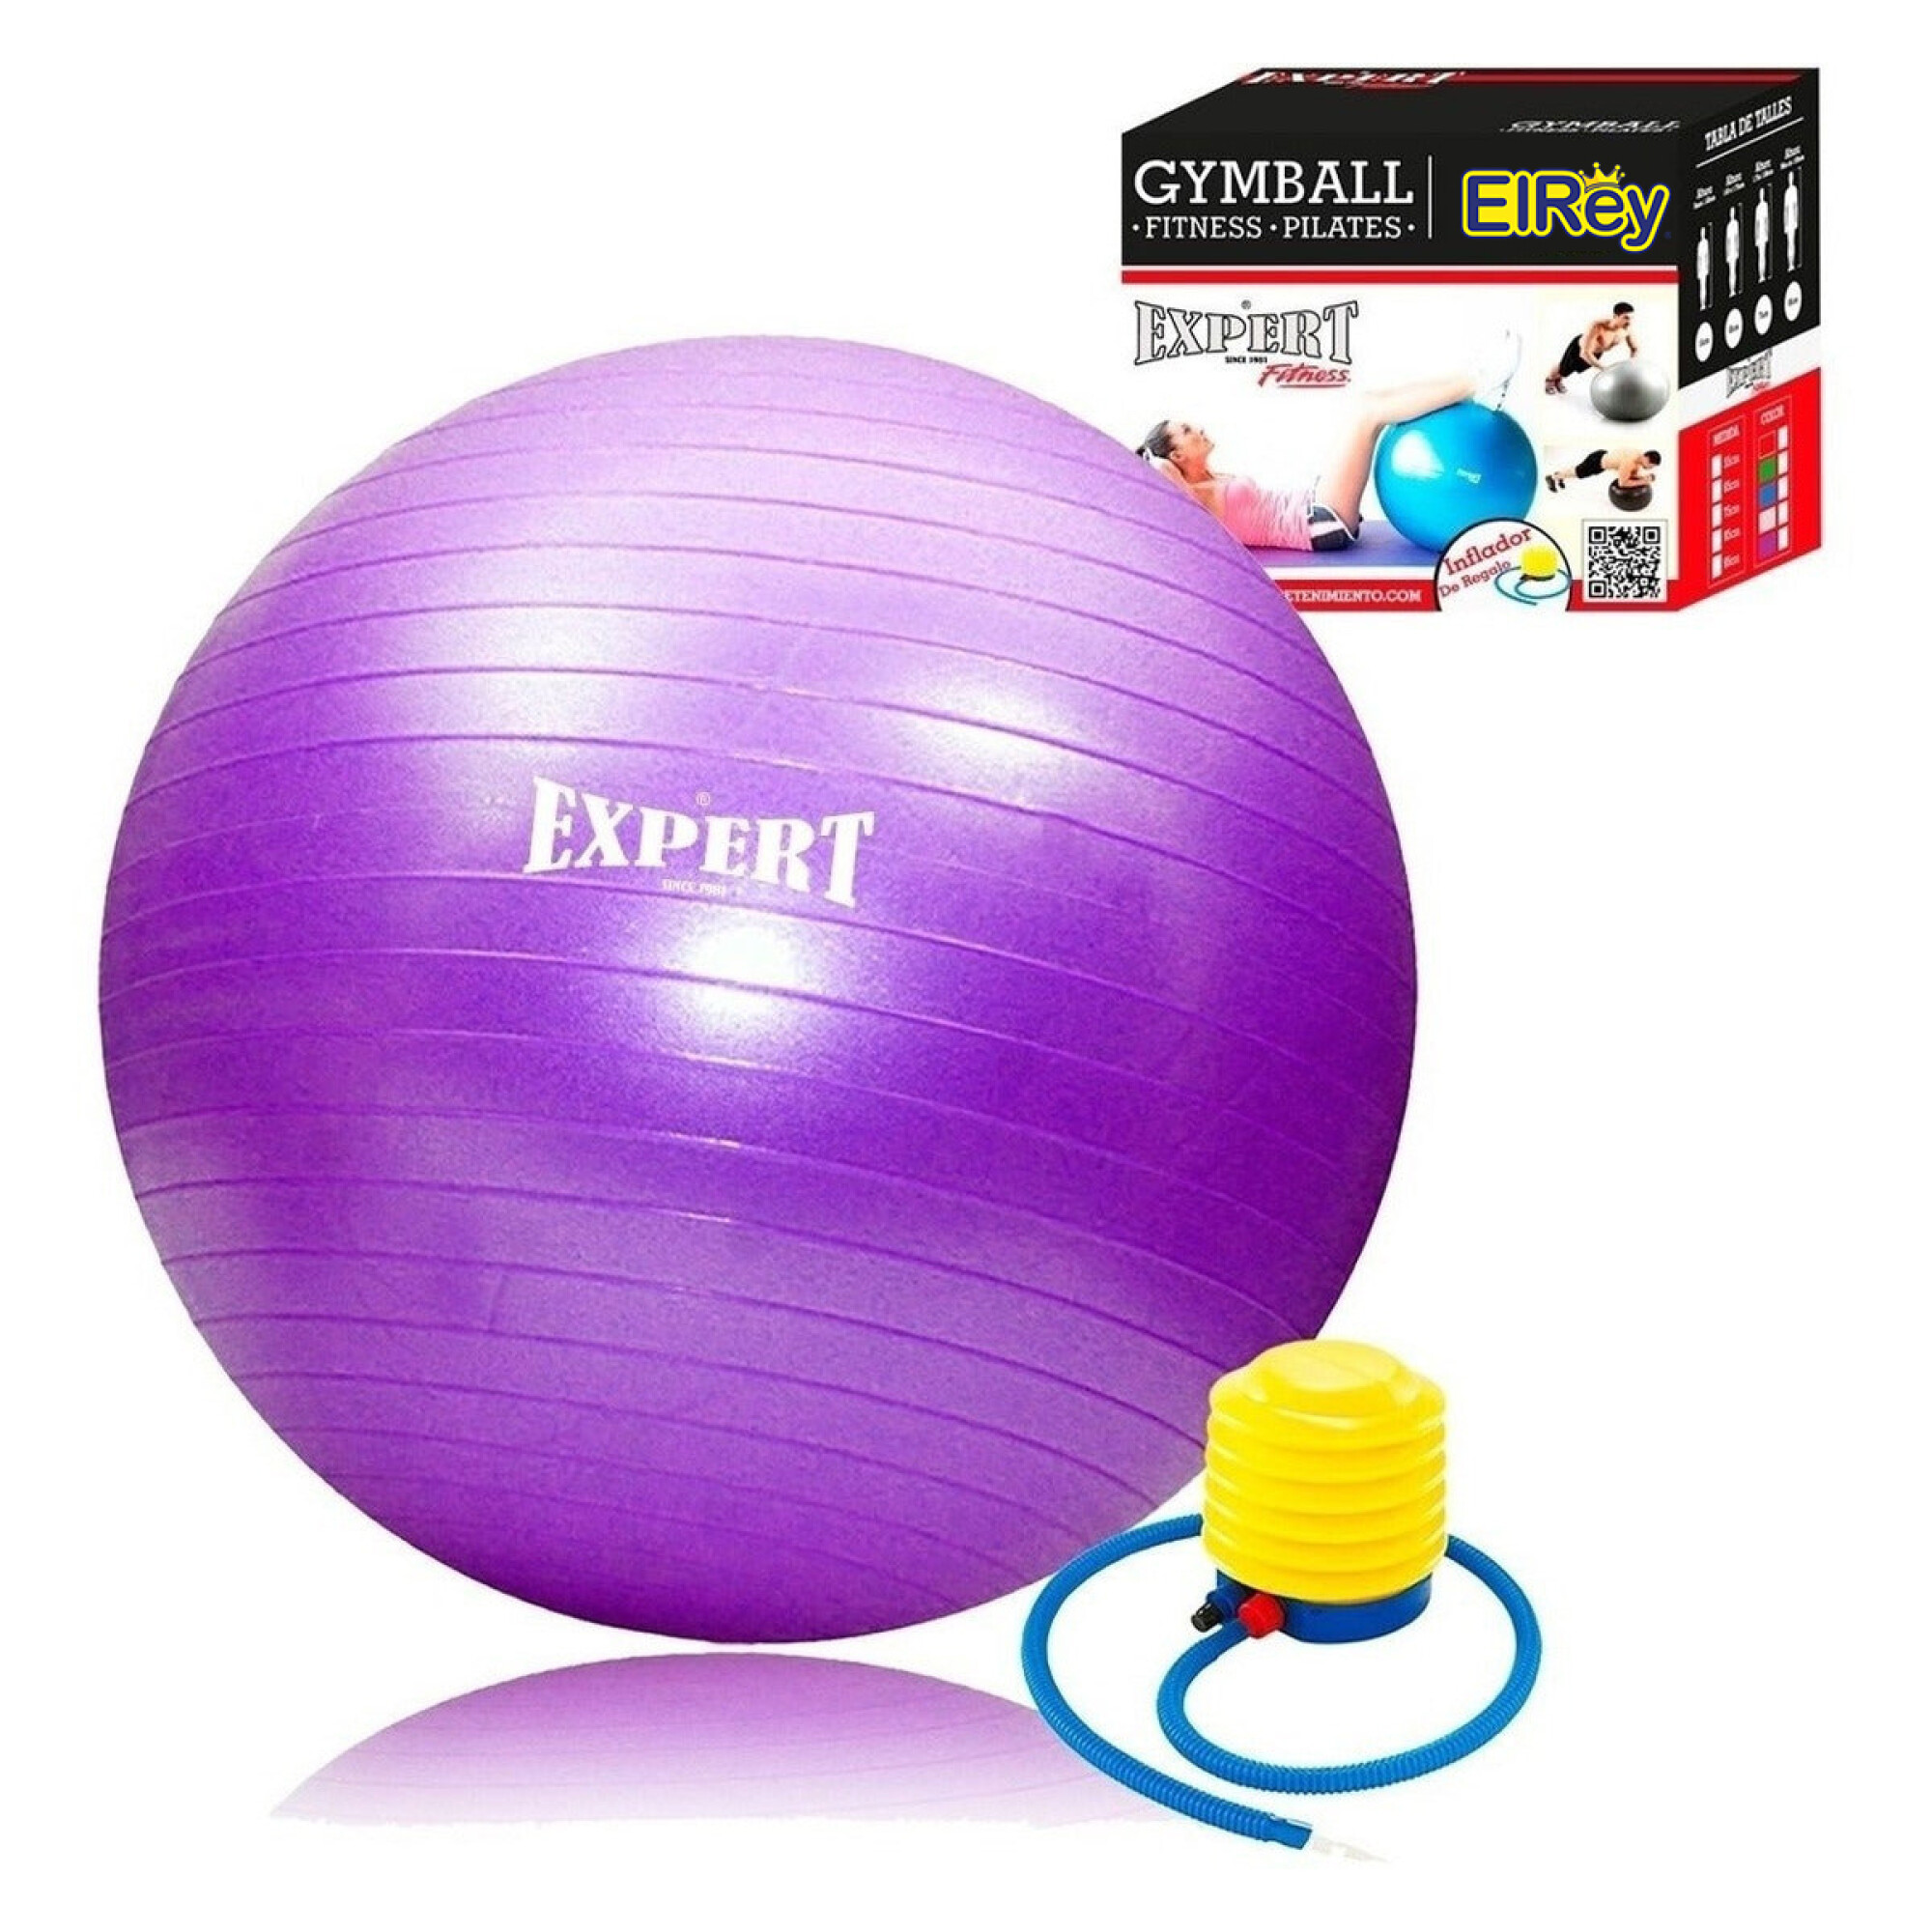 Accesorios para hacer ejercicio bola de ejercicios 65cm gym